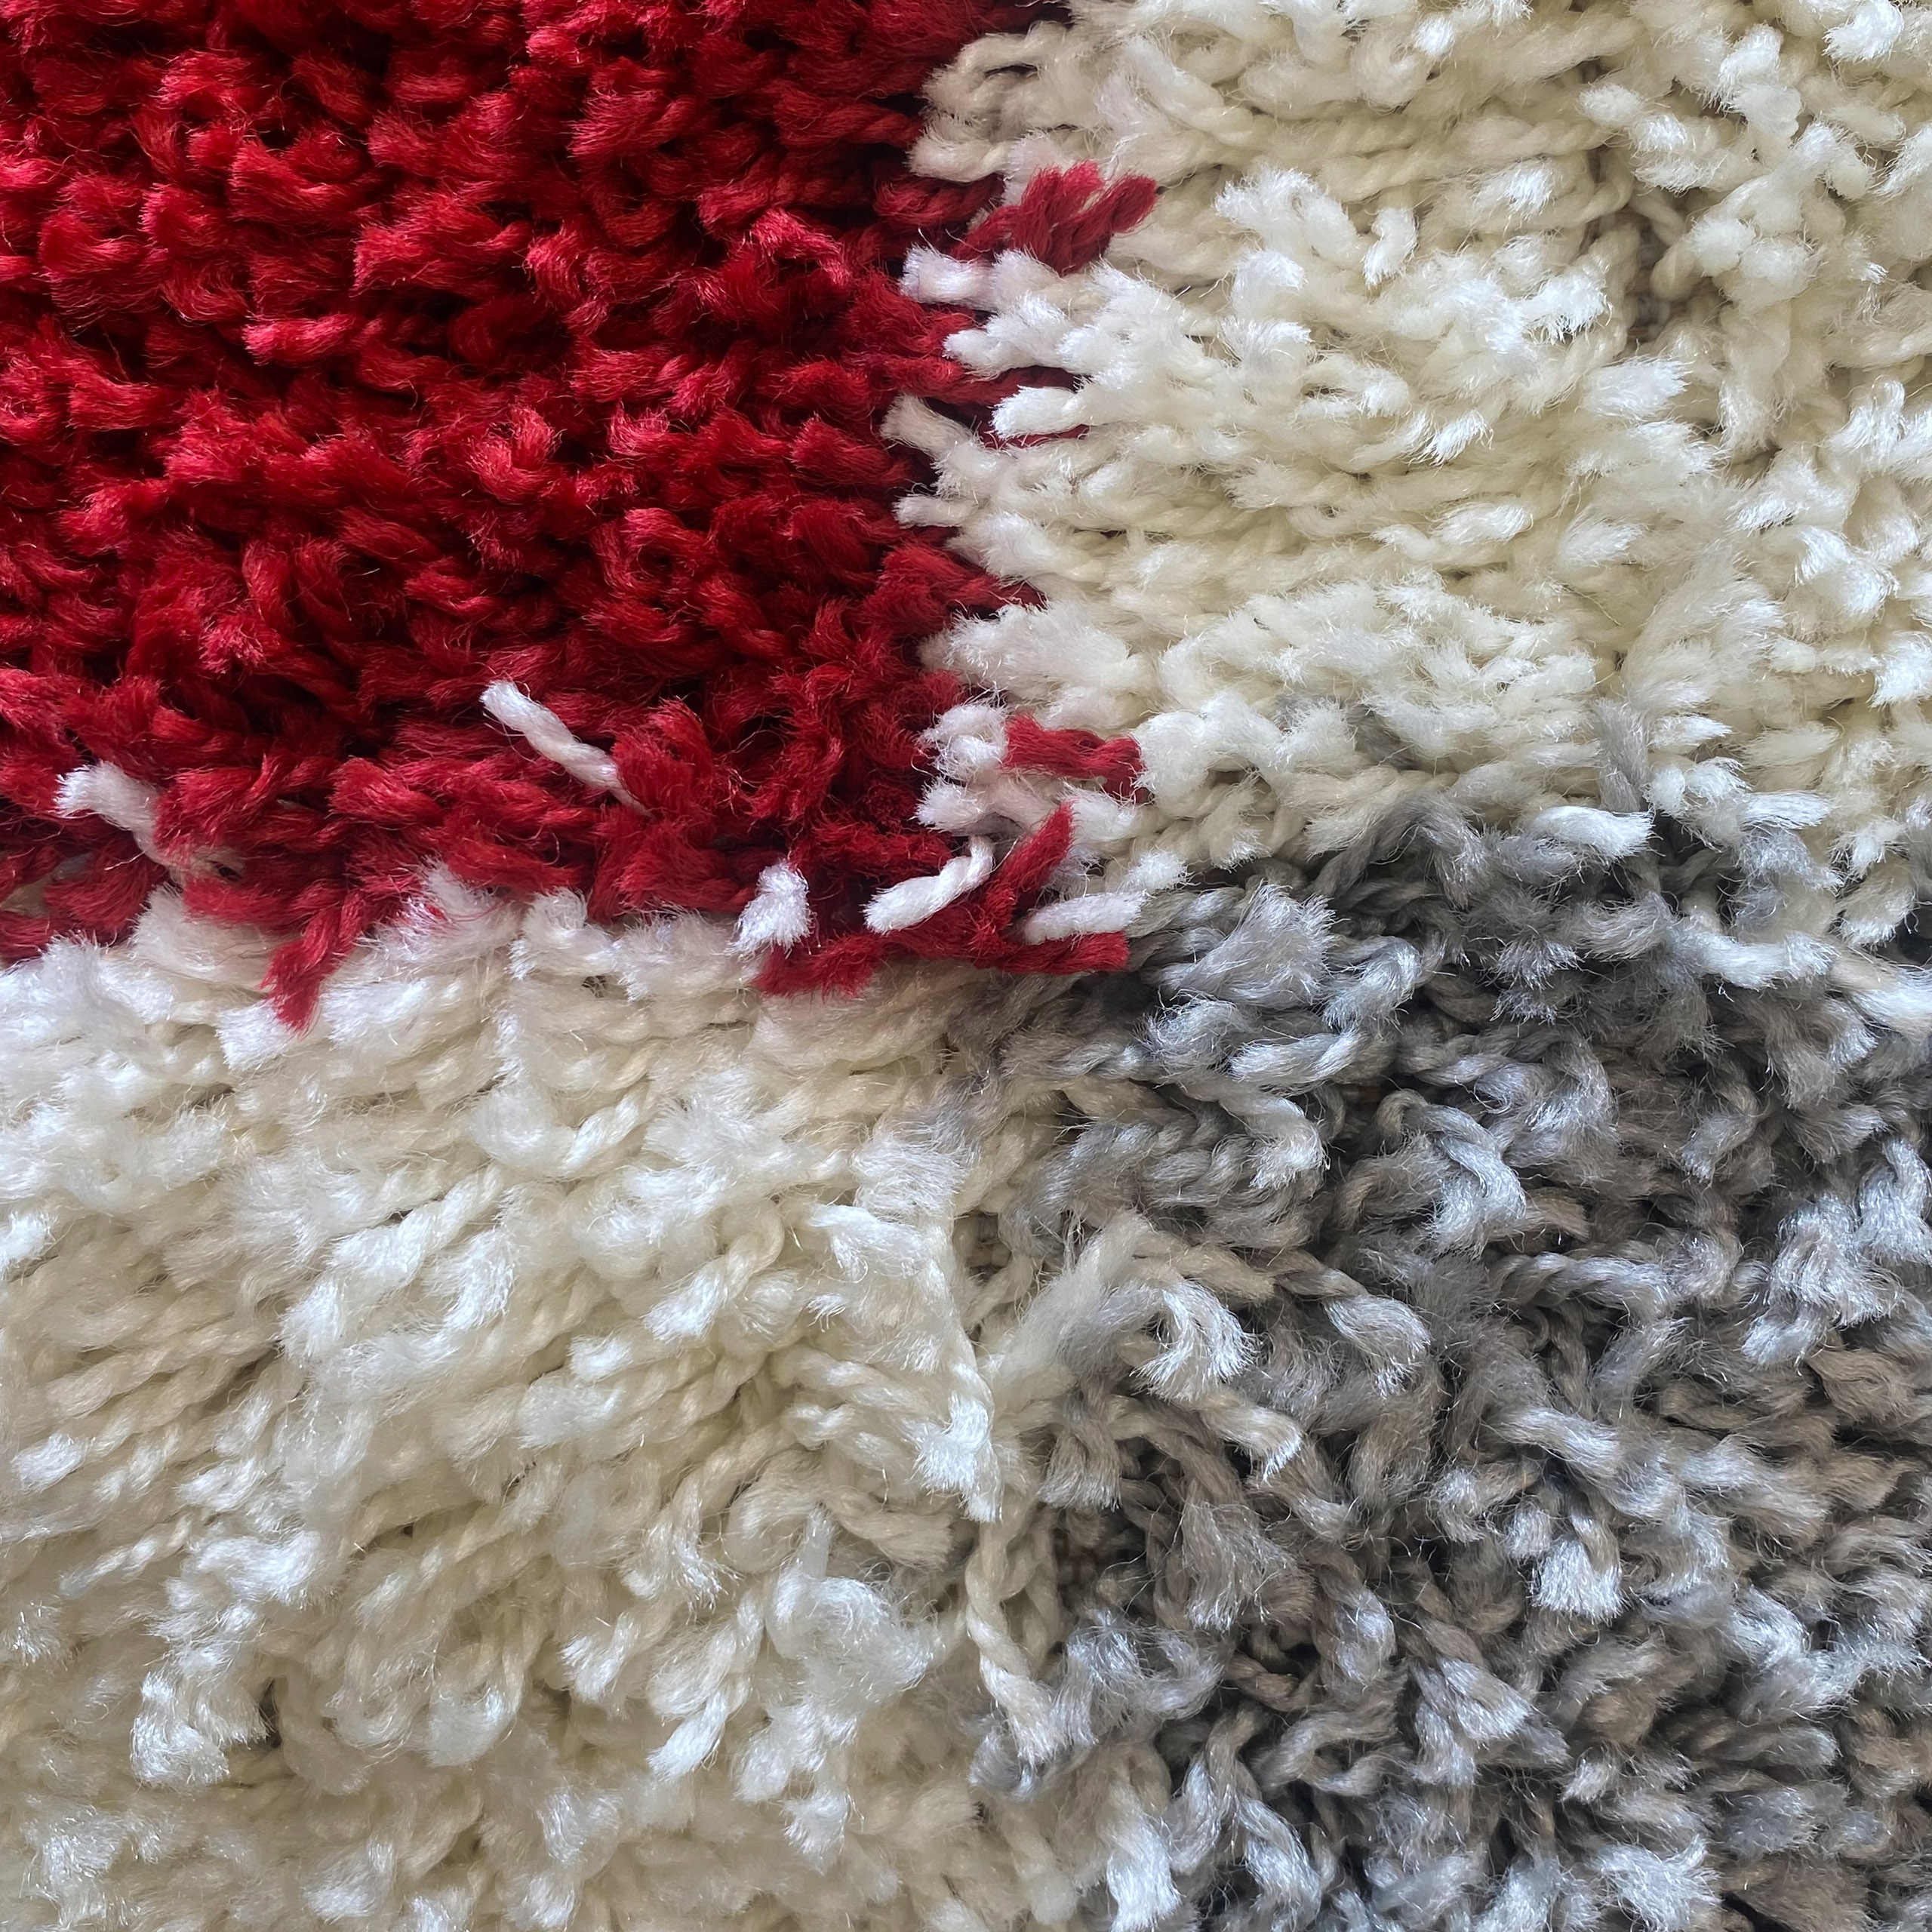 & Good Good Shaggy pile carpets carpets online: prices shop fair pile pricesHigh quality, fair shop quality, High & online: - Teppich-Traum Shaggy